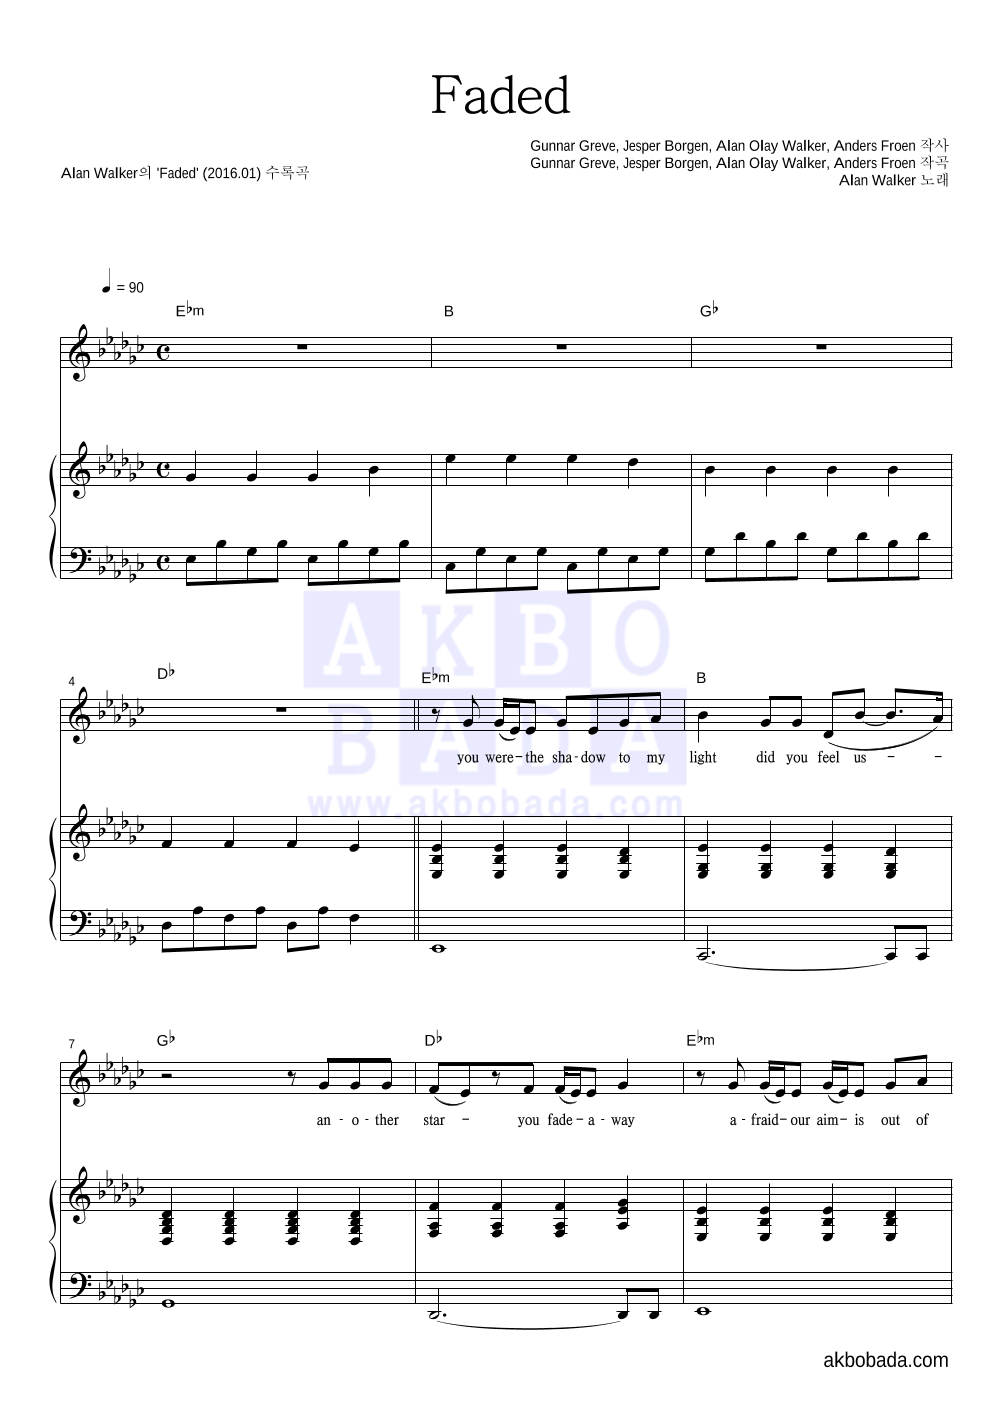 Alan Walker - Faded 피아노 3단 악보 